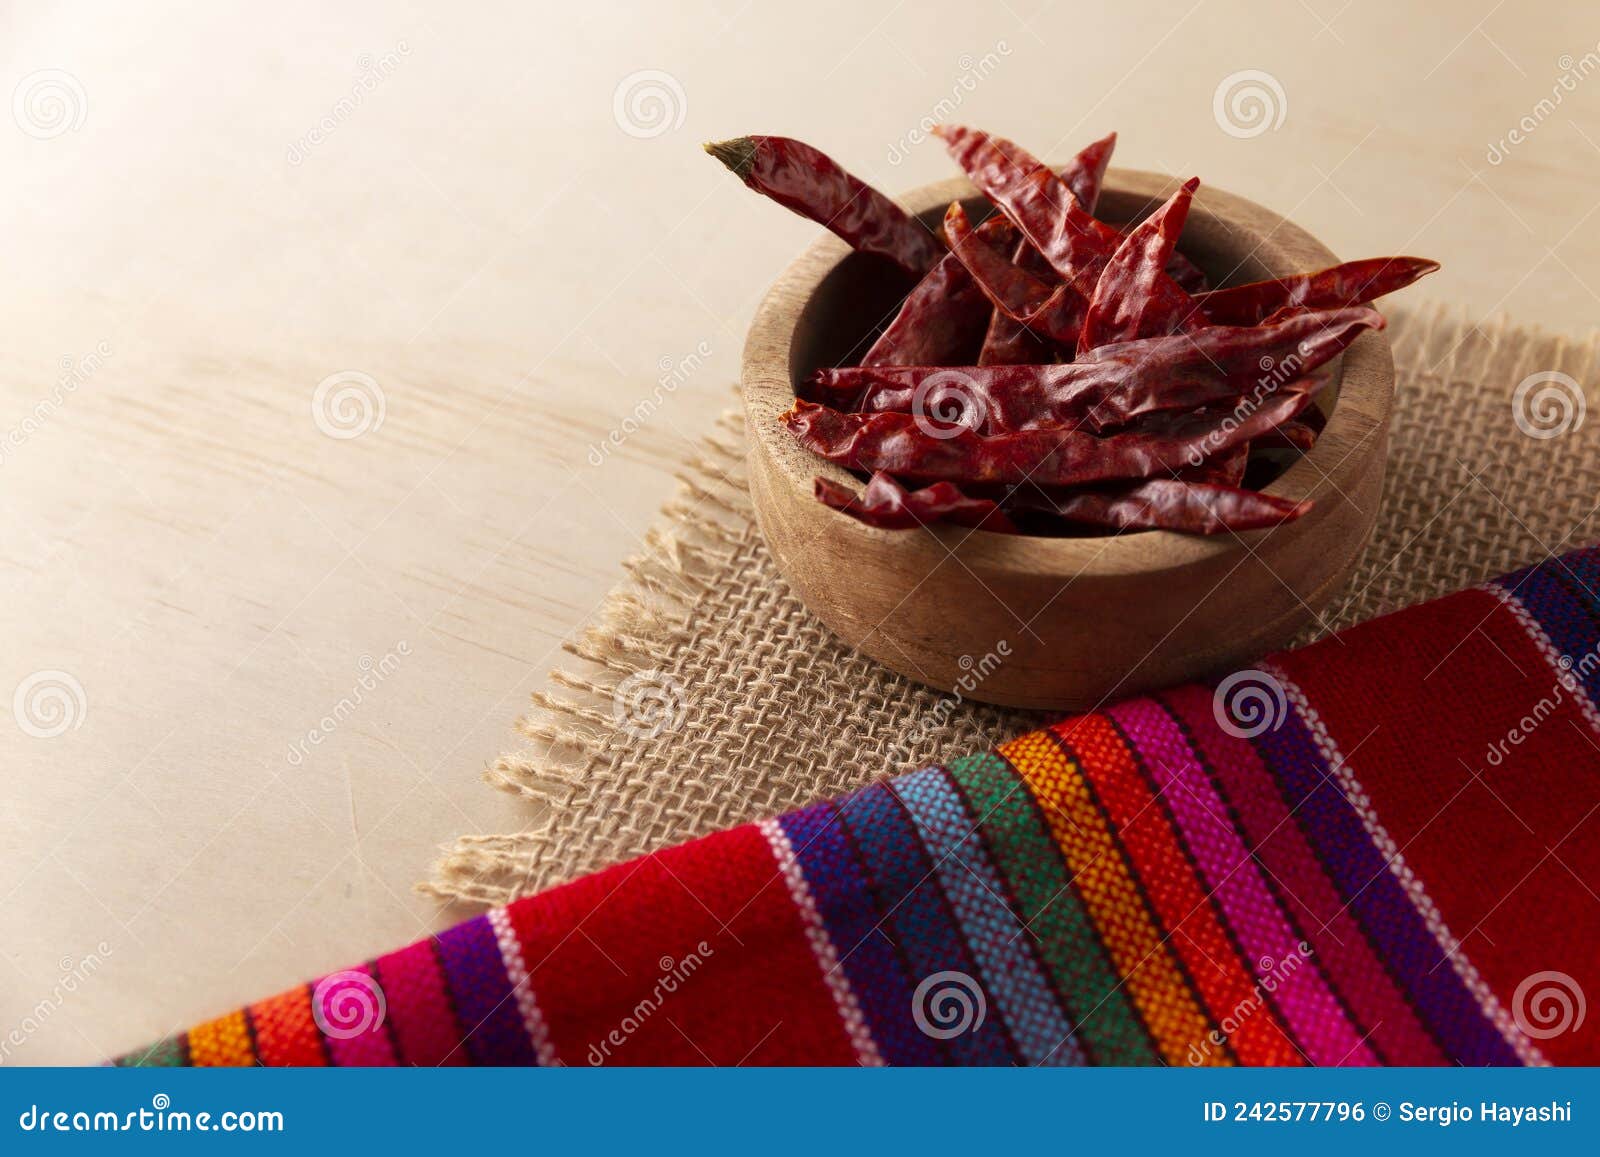 dried chile de arbol of mexico